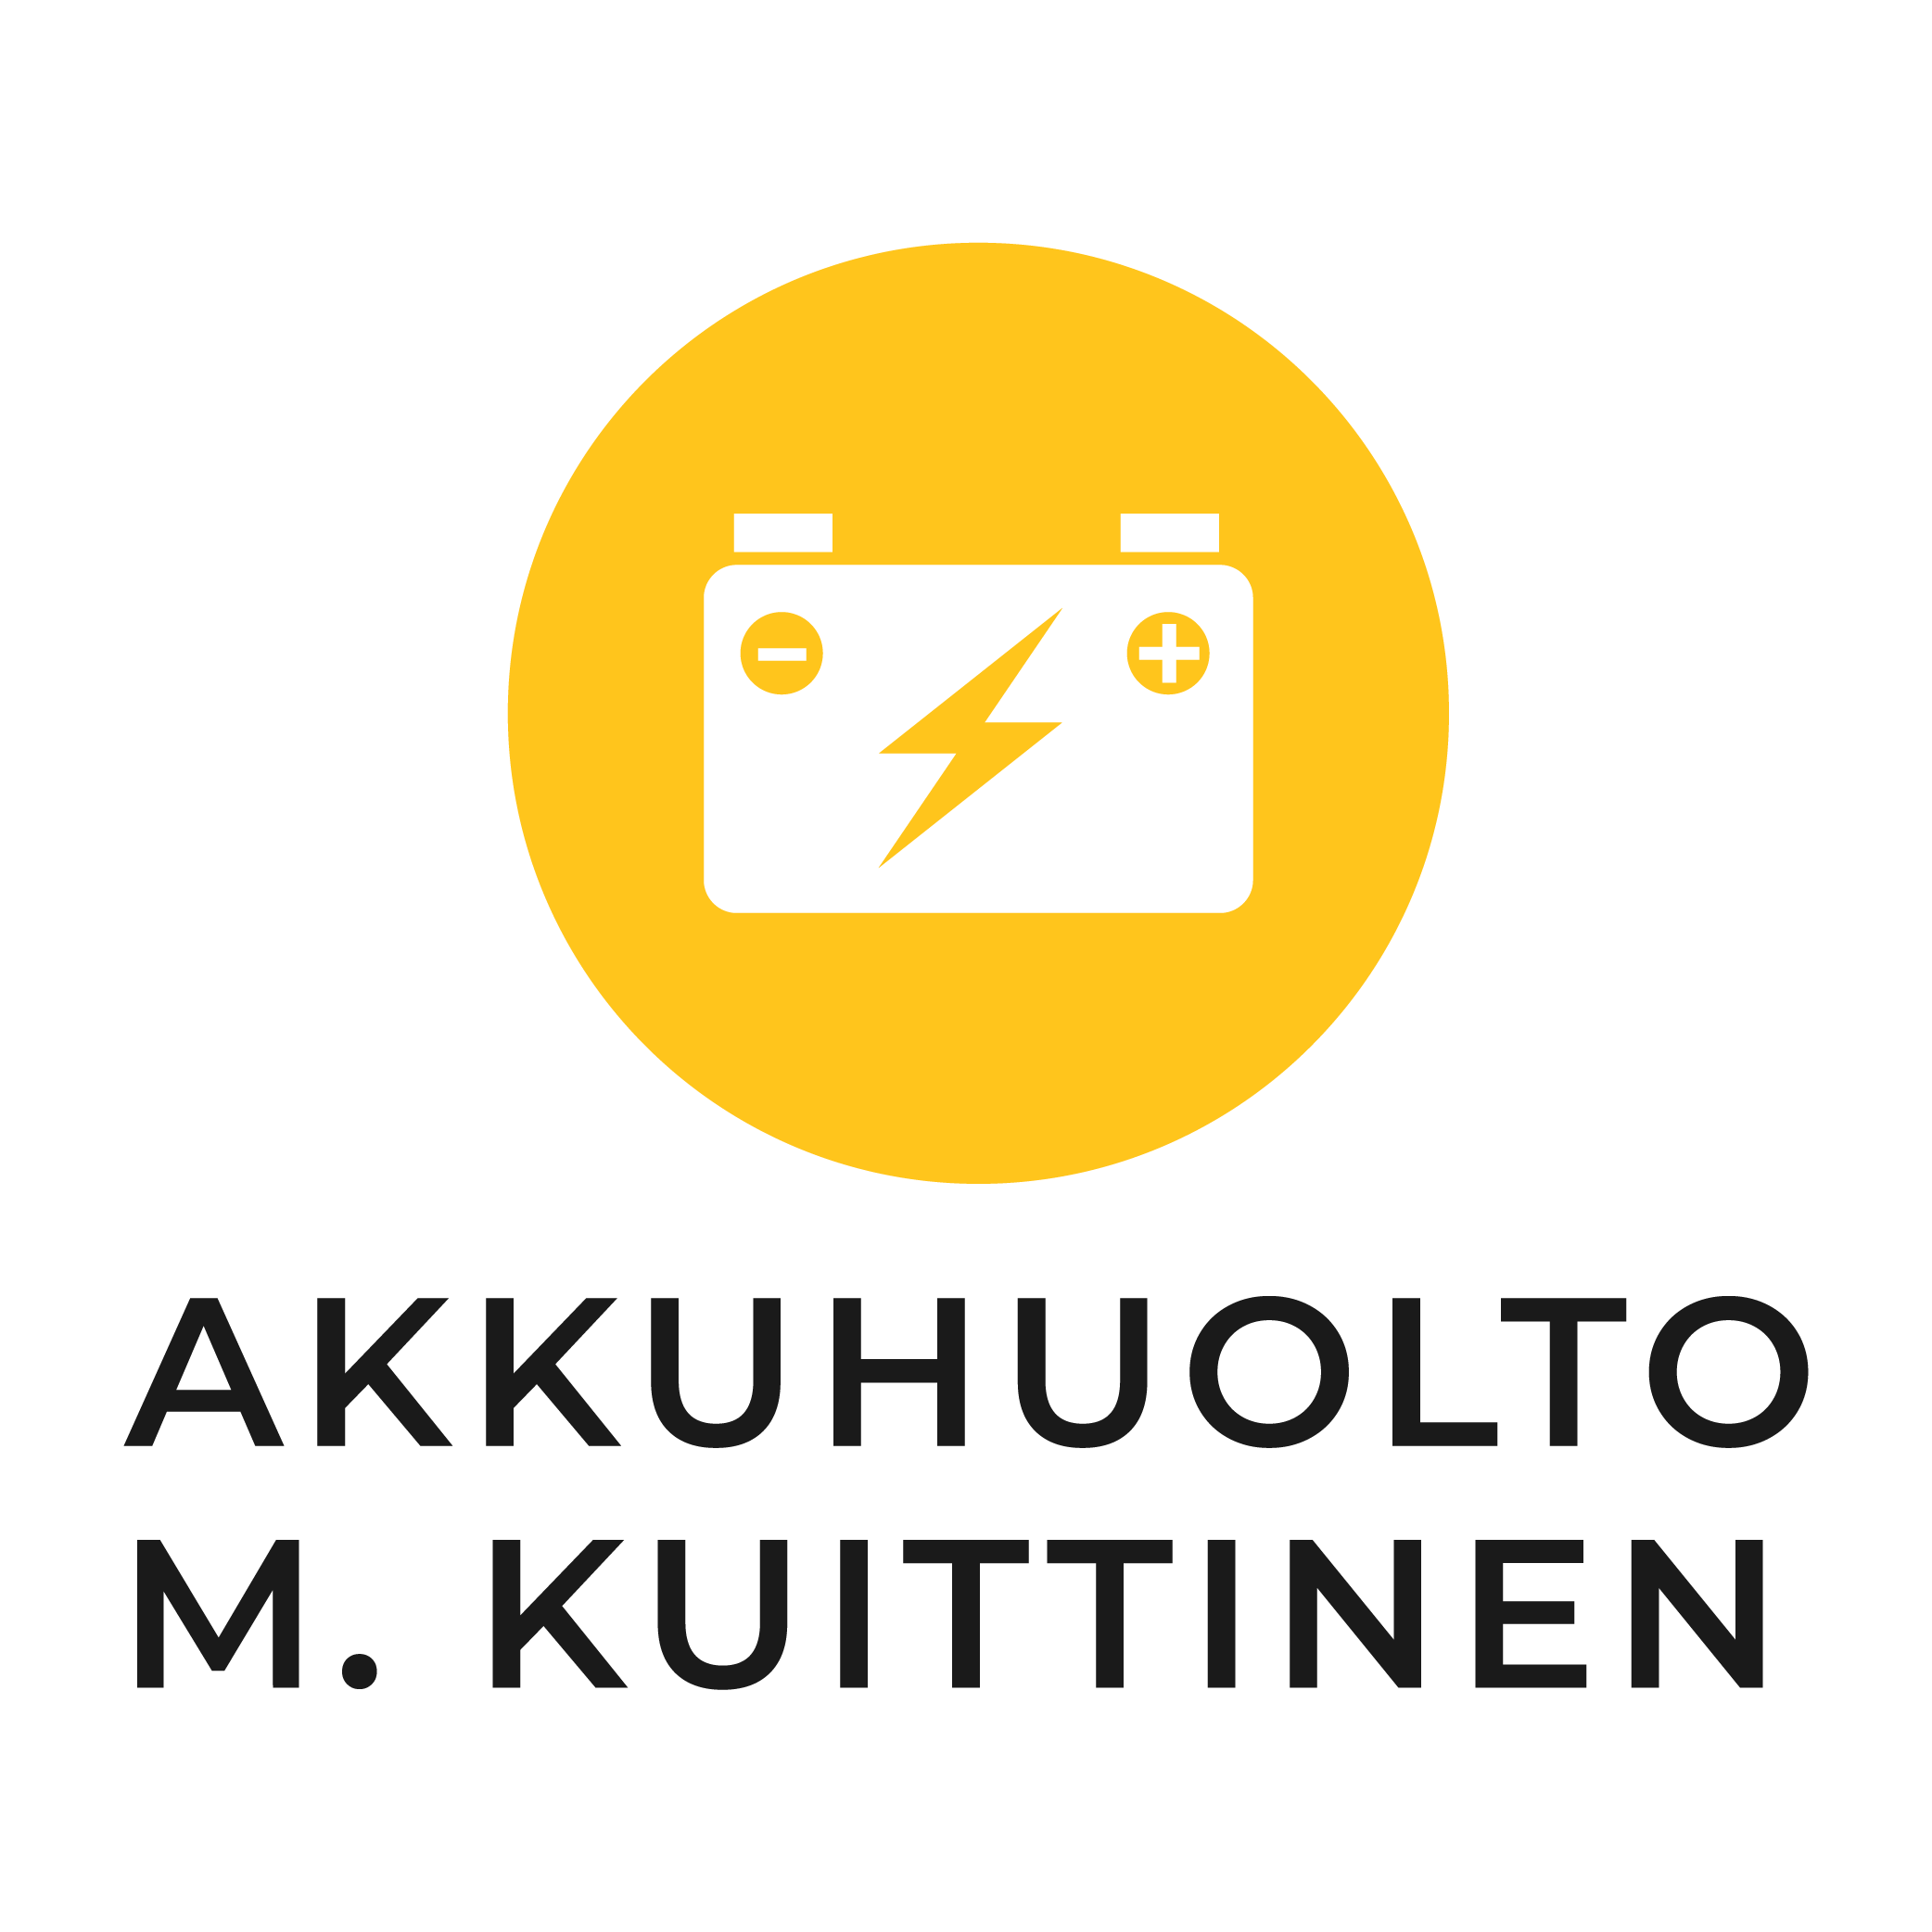 Akkuhuolto M. Kuittinen logo